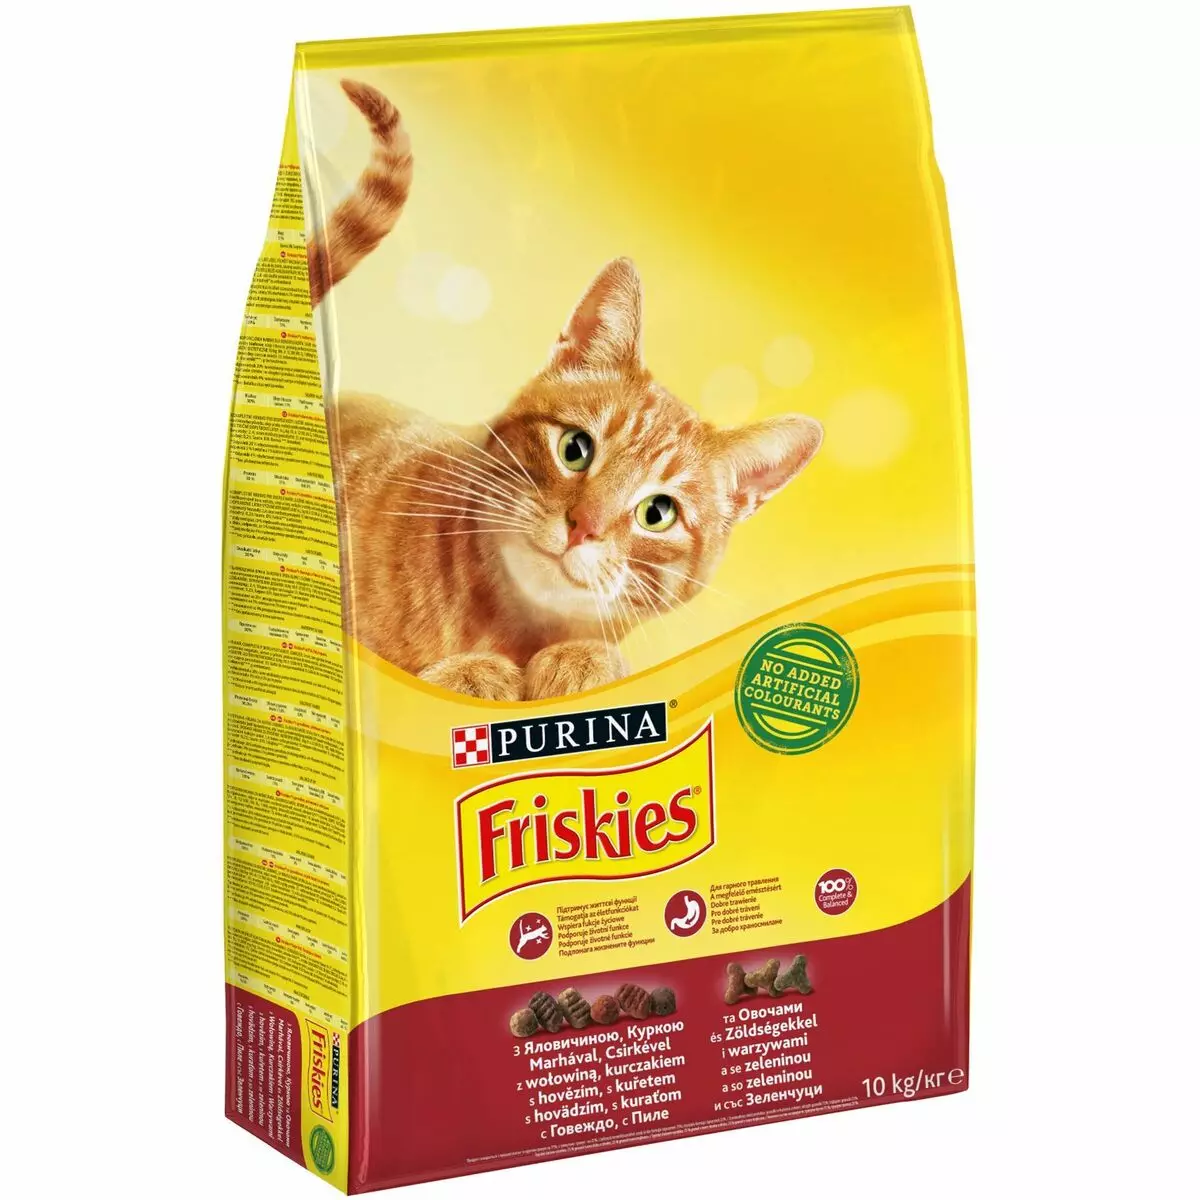 فلیکس بلیوں کے لئے خشک خوراک: ساخت، بالغ بلیوں کے لئے بلی کا کھانا 1.5 کلو گرام، کٹی فیڈ کا جائزہ 11349_3